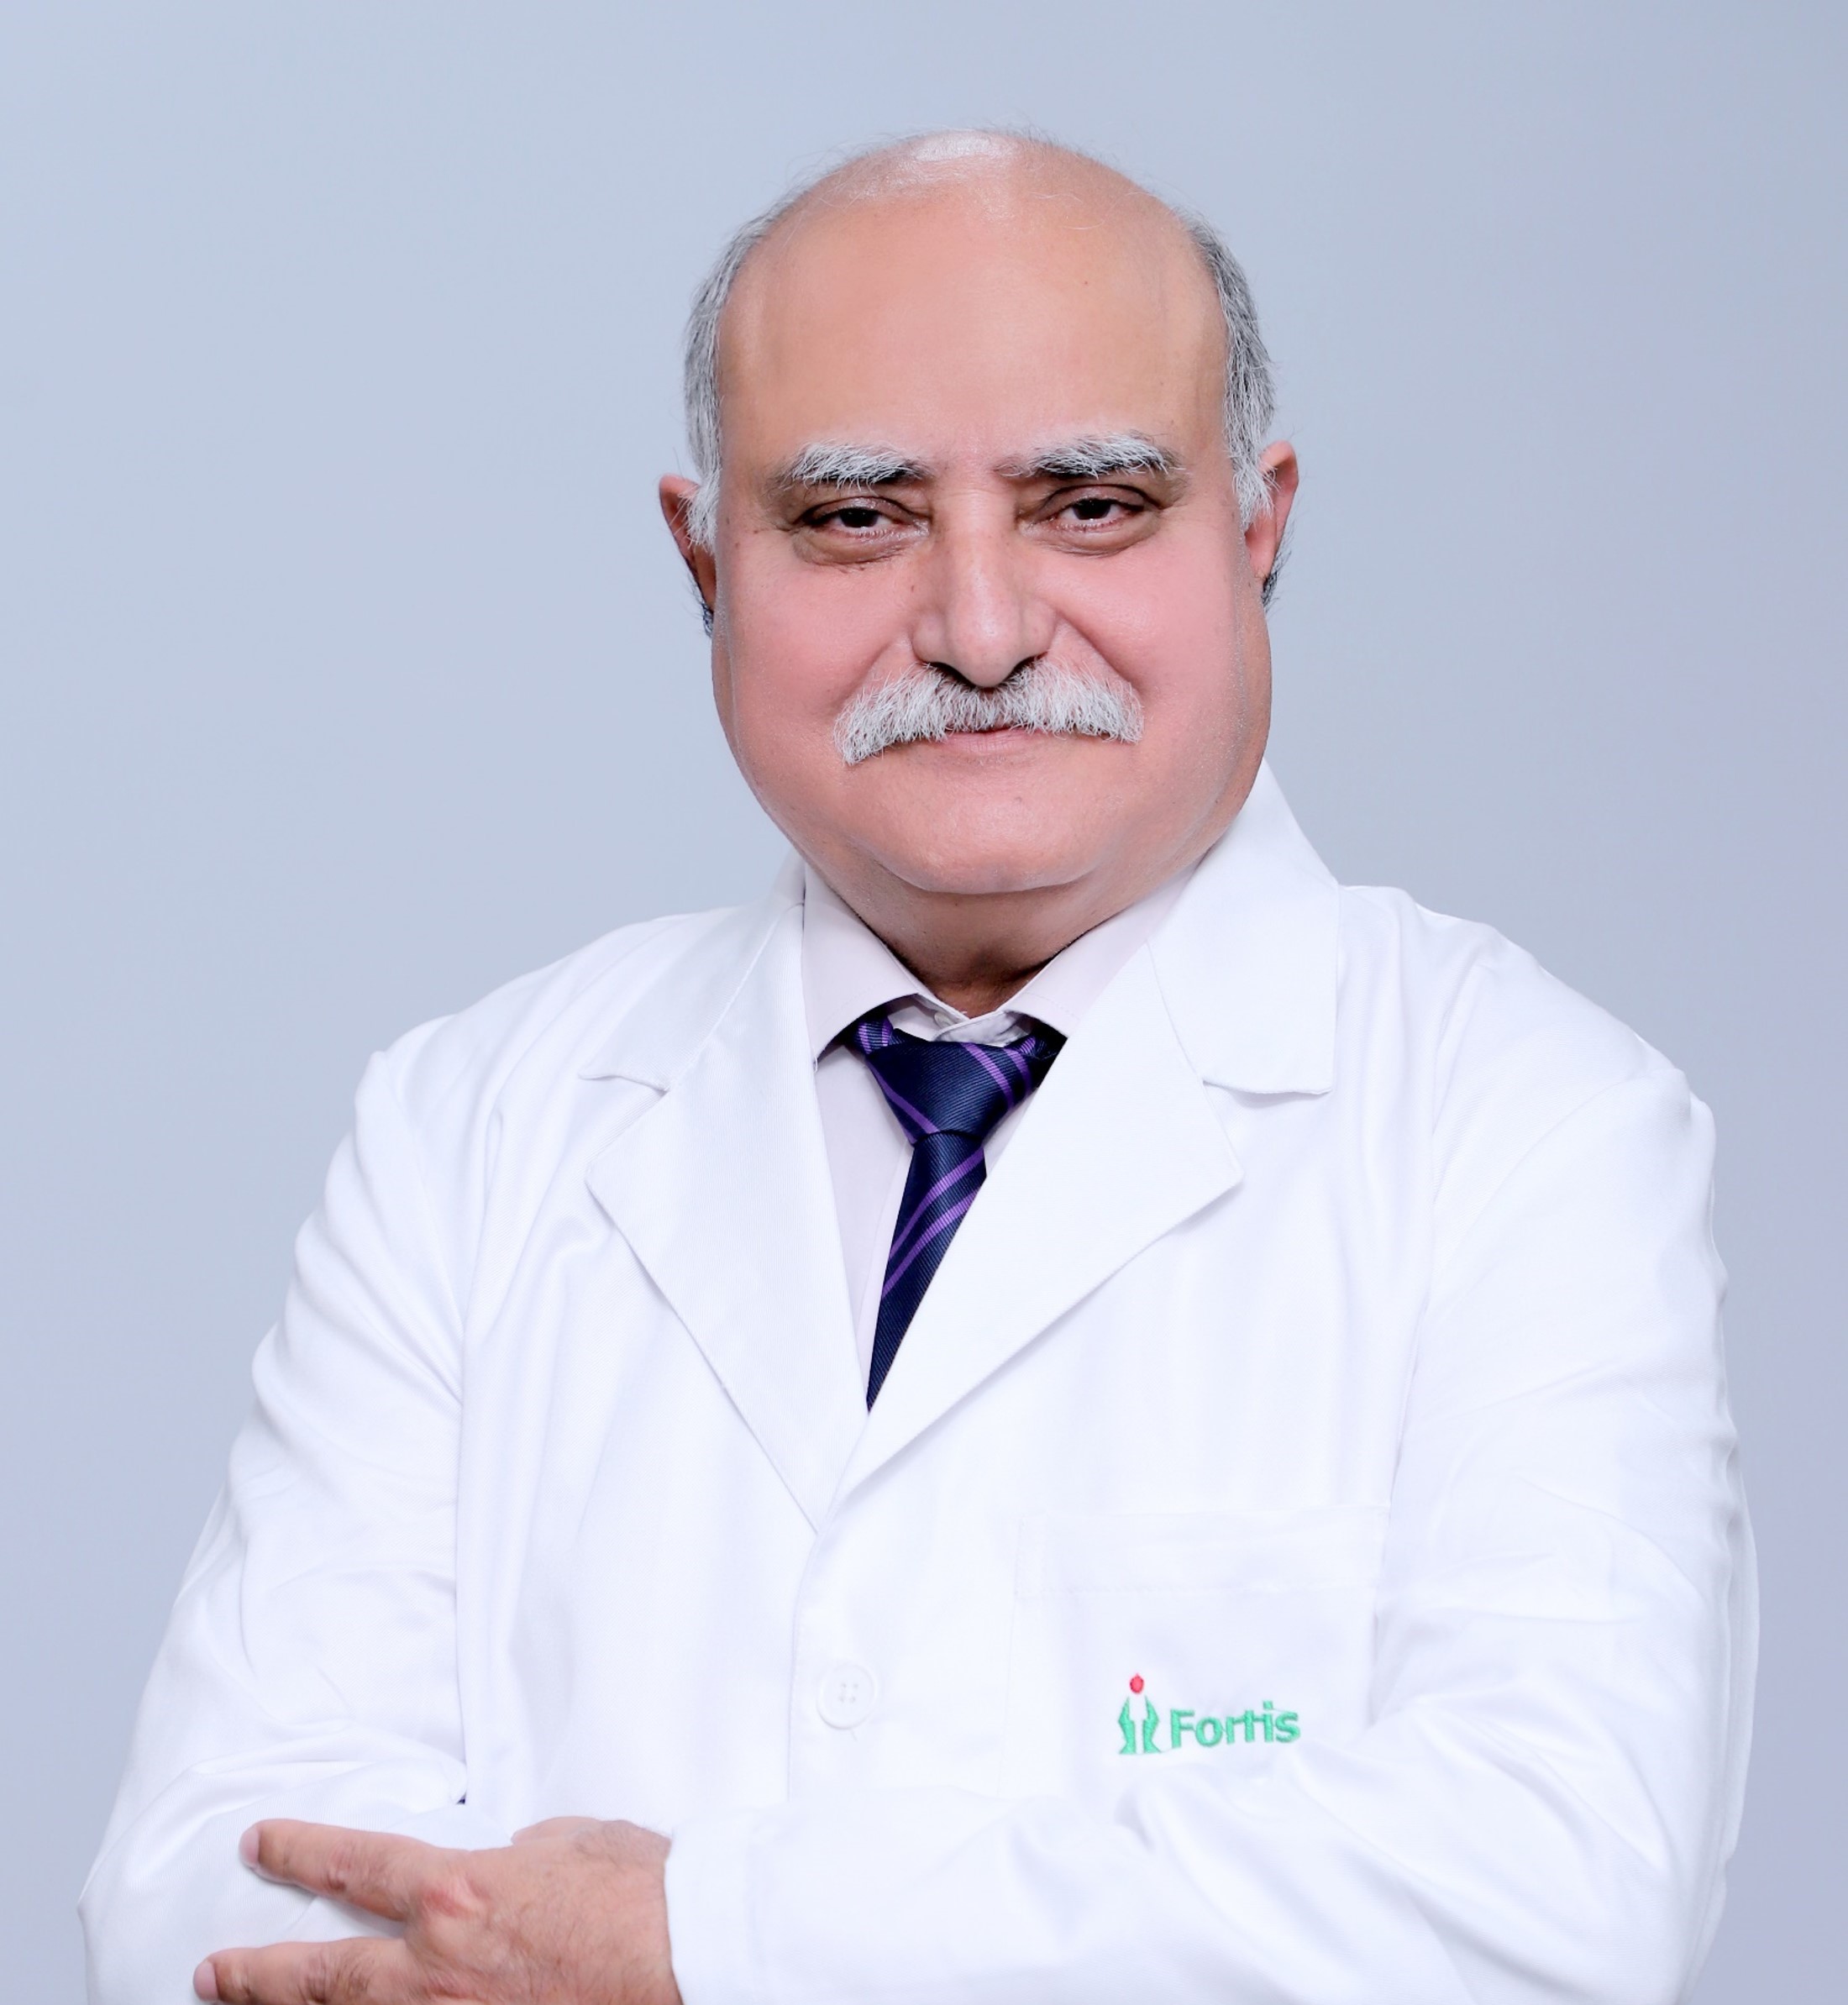 Ajay Kaul博士